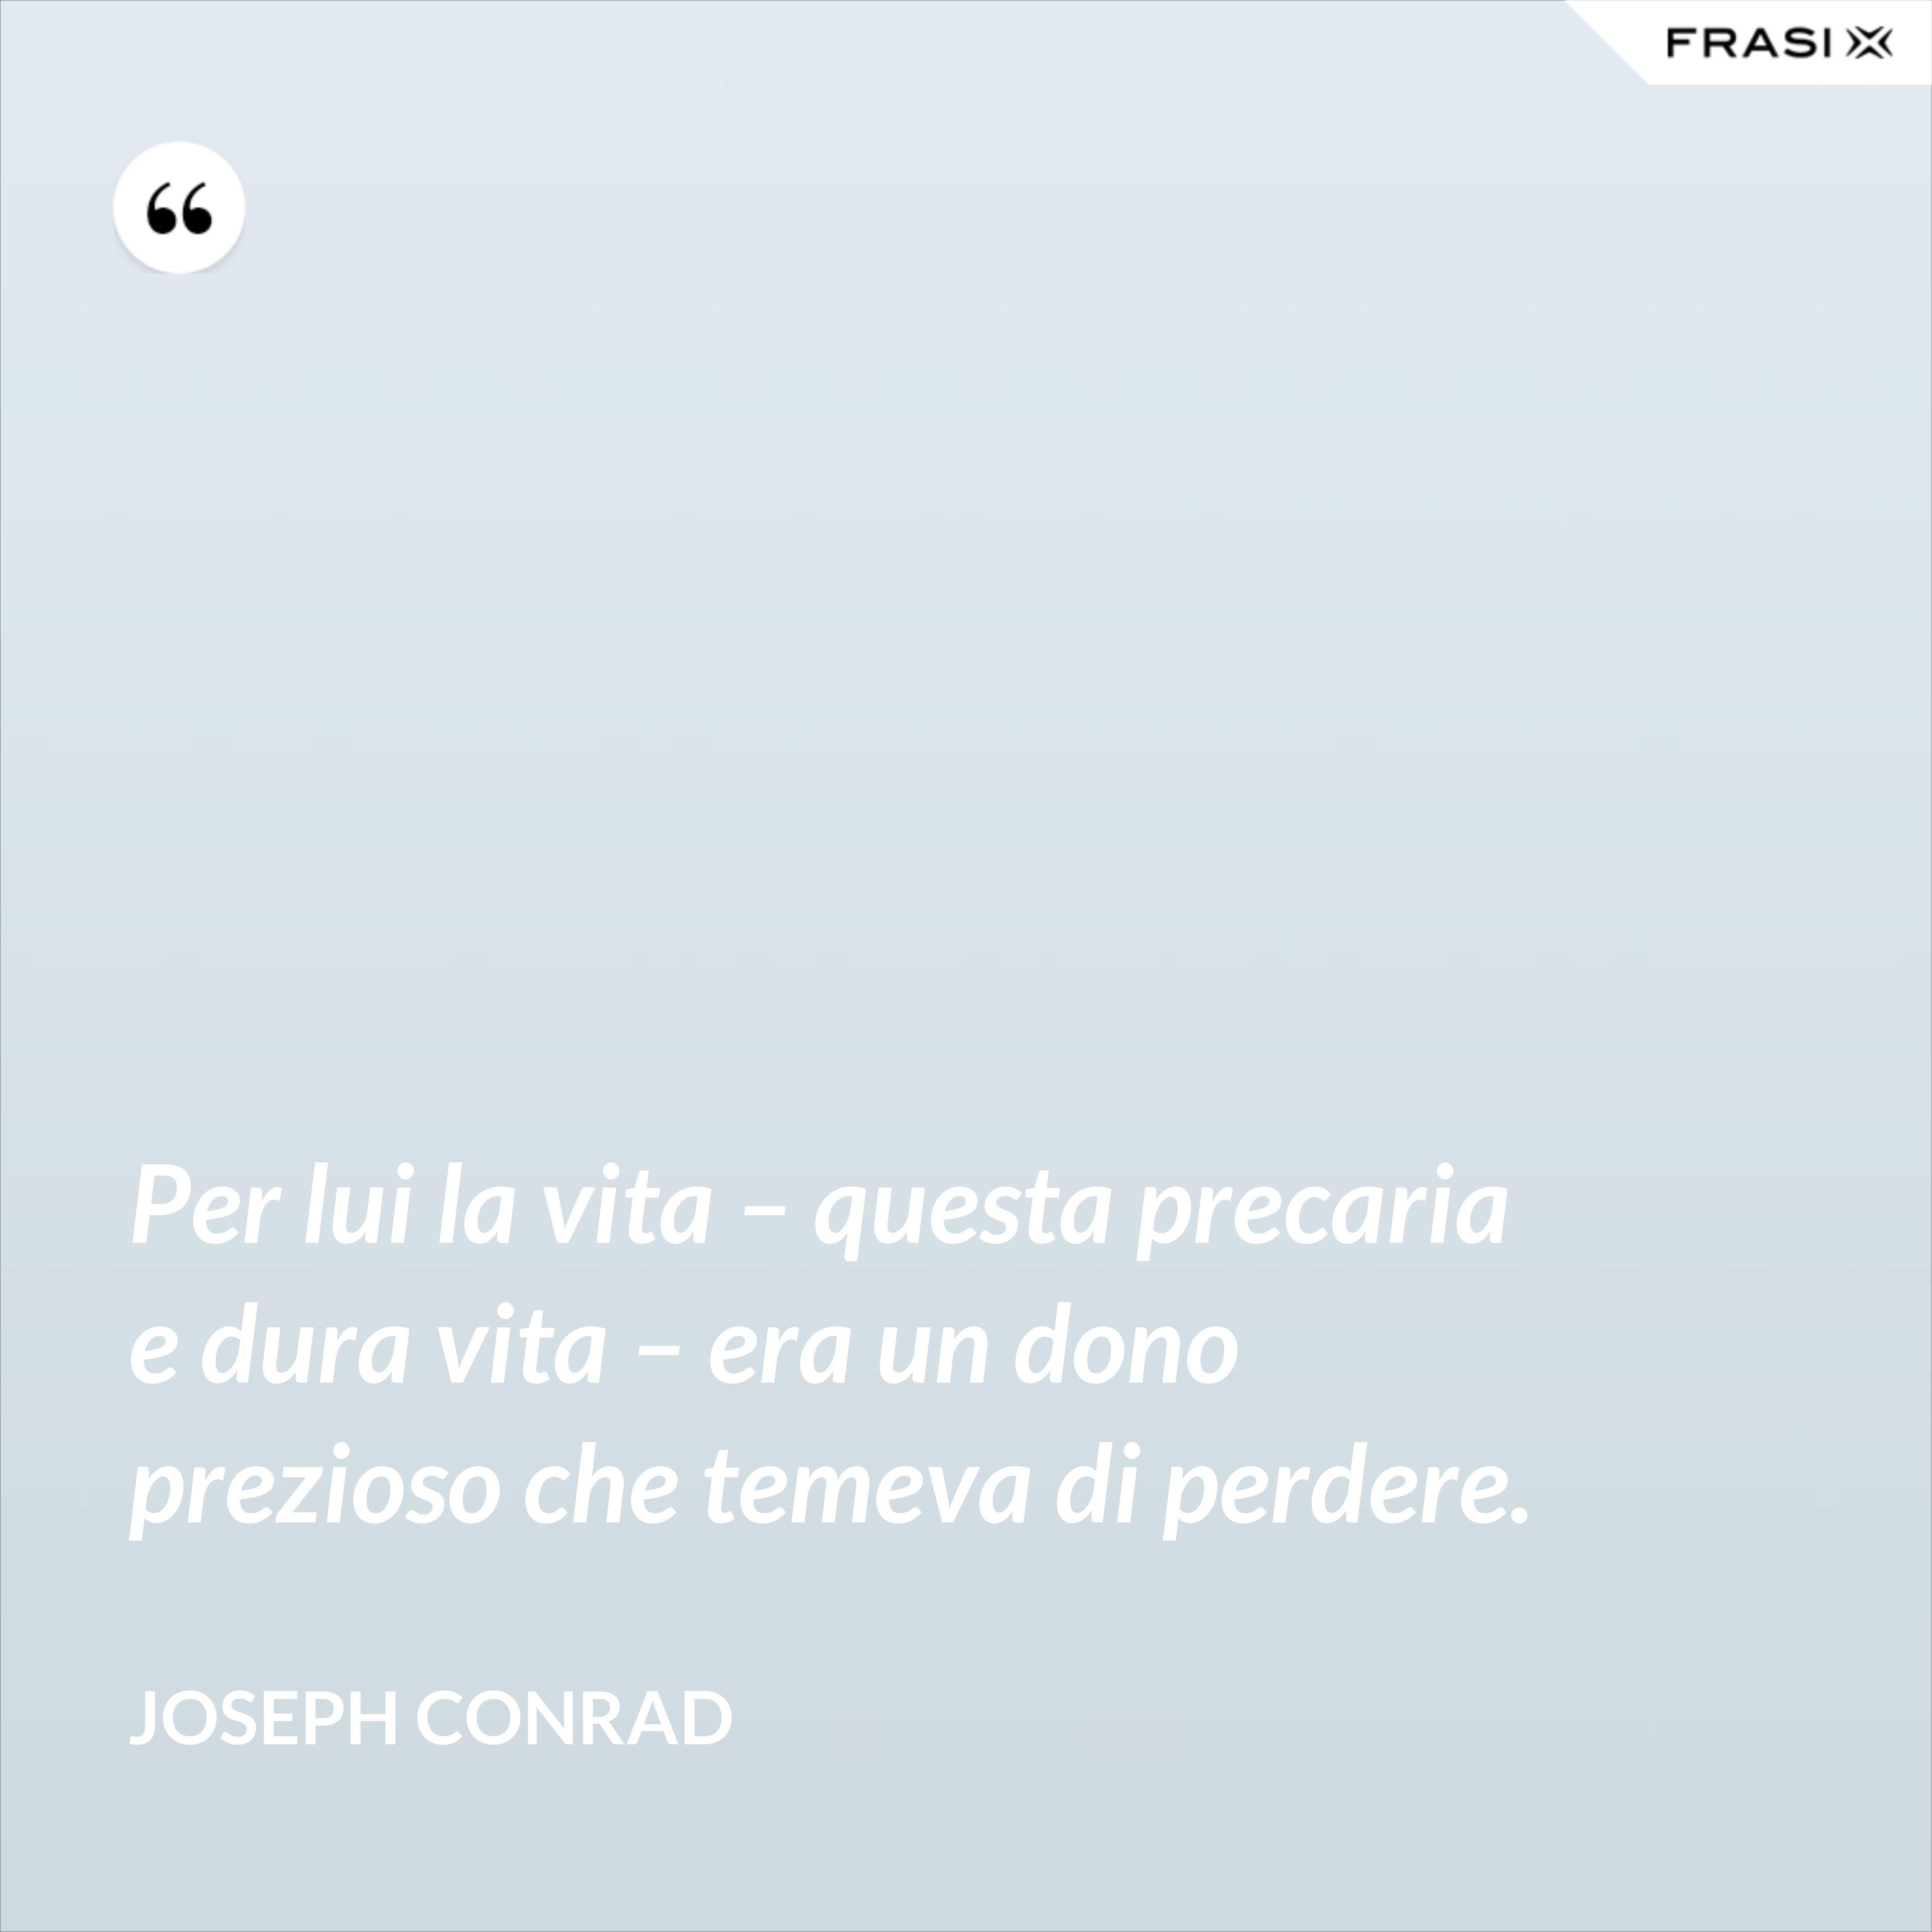 Per lui la vita – questa precaria e dura vita – era un dono prezioso che temeva di perdere. - Joseph Conrad